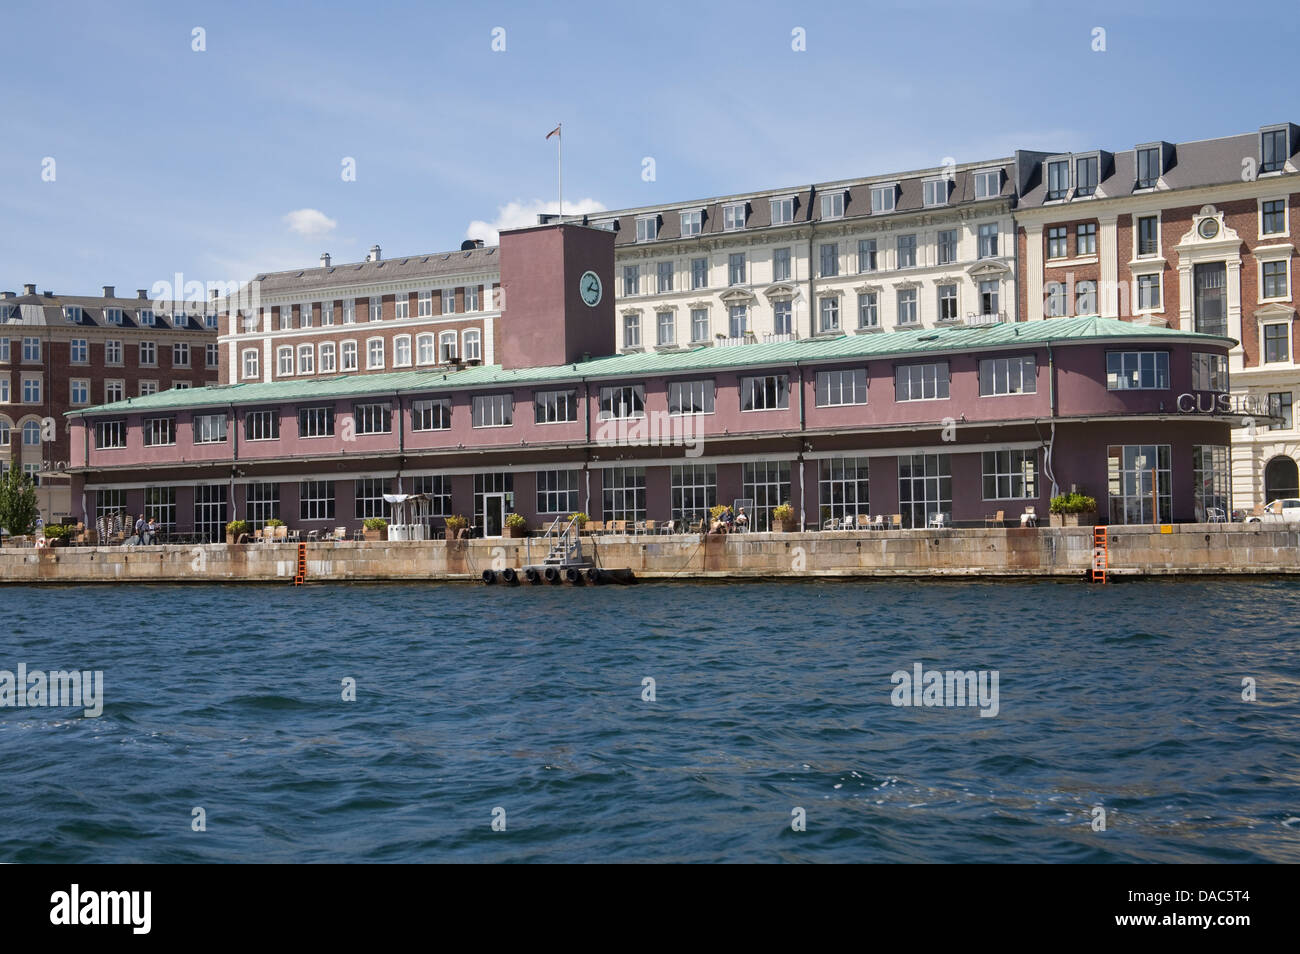 Copenhague Danemark eu Sir Terence Conran a récemment ouvert du complexe gastronomique est installé dans l'ancien terminal de ferry sur Havnegade Banque D'Images